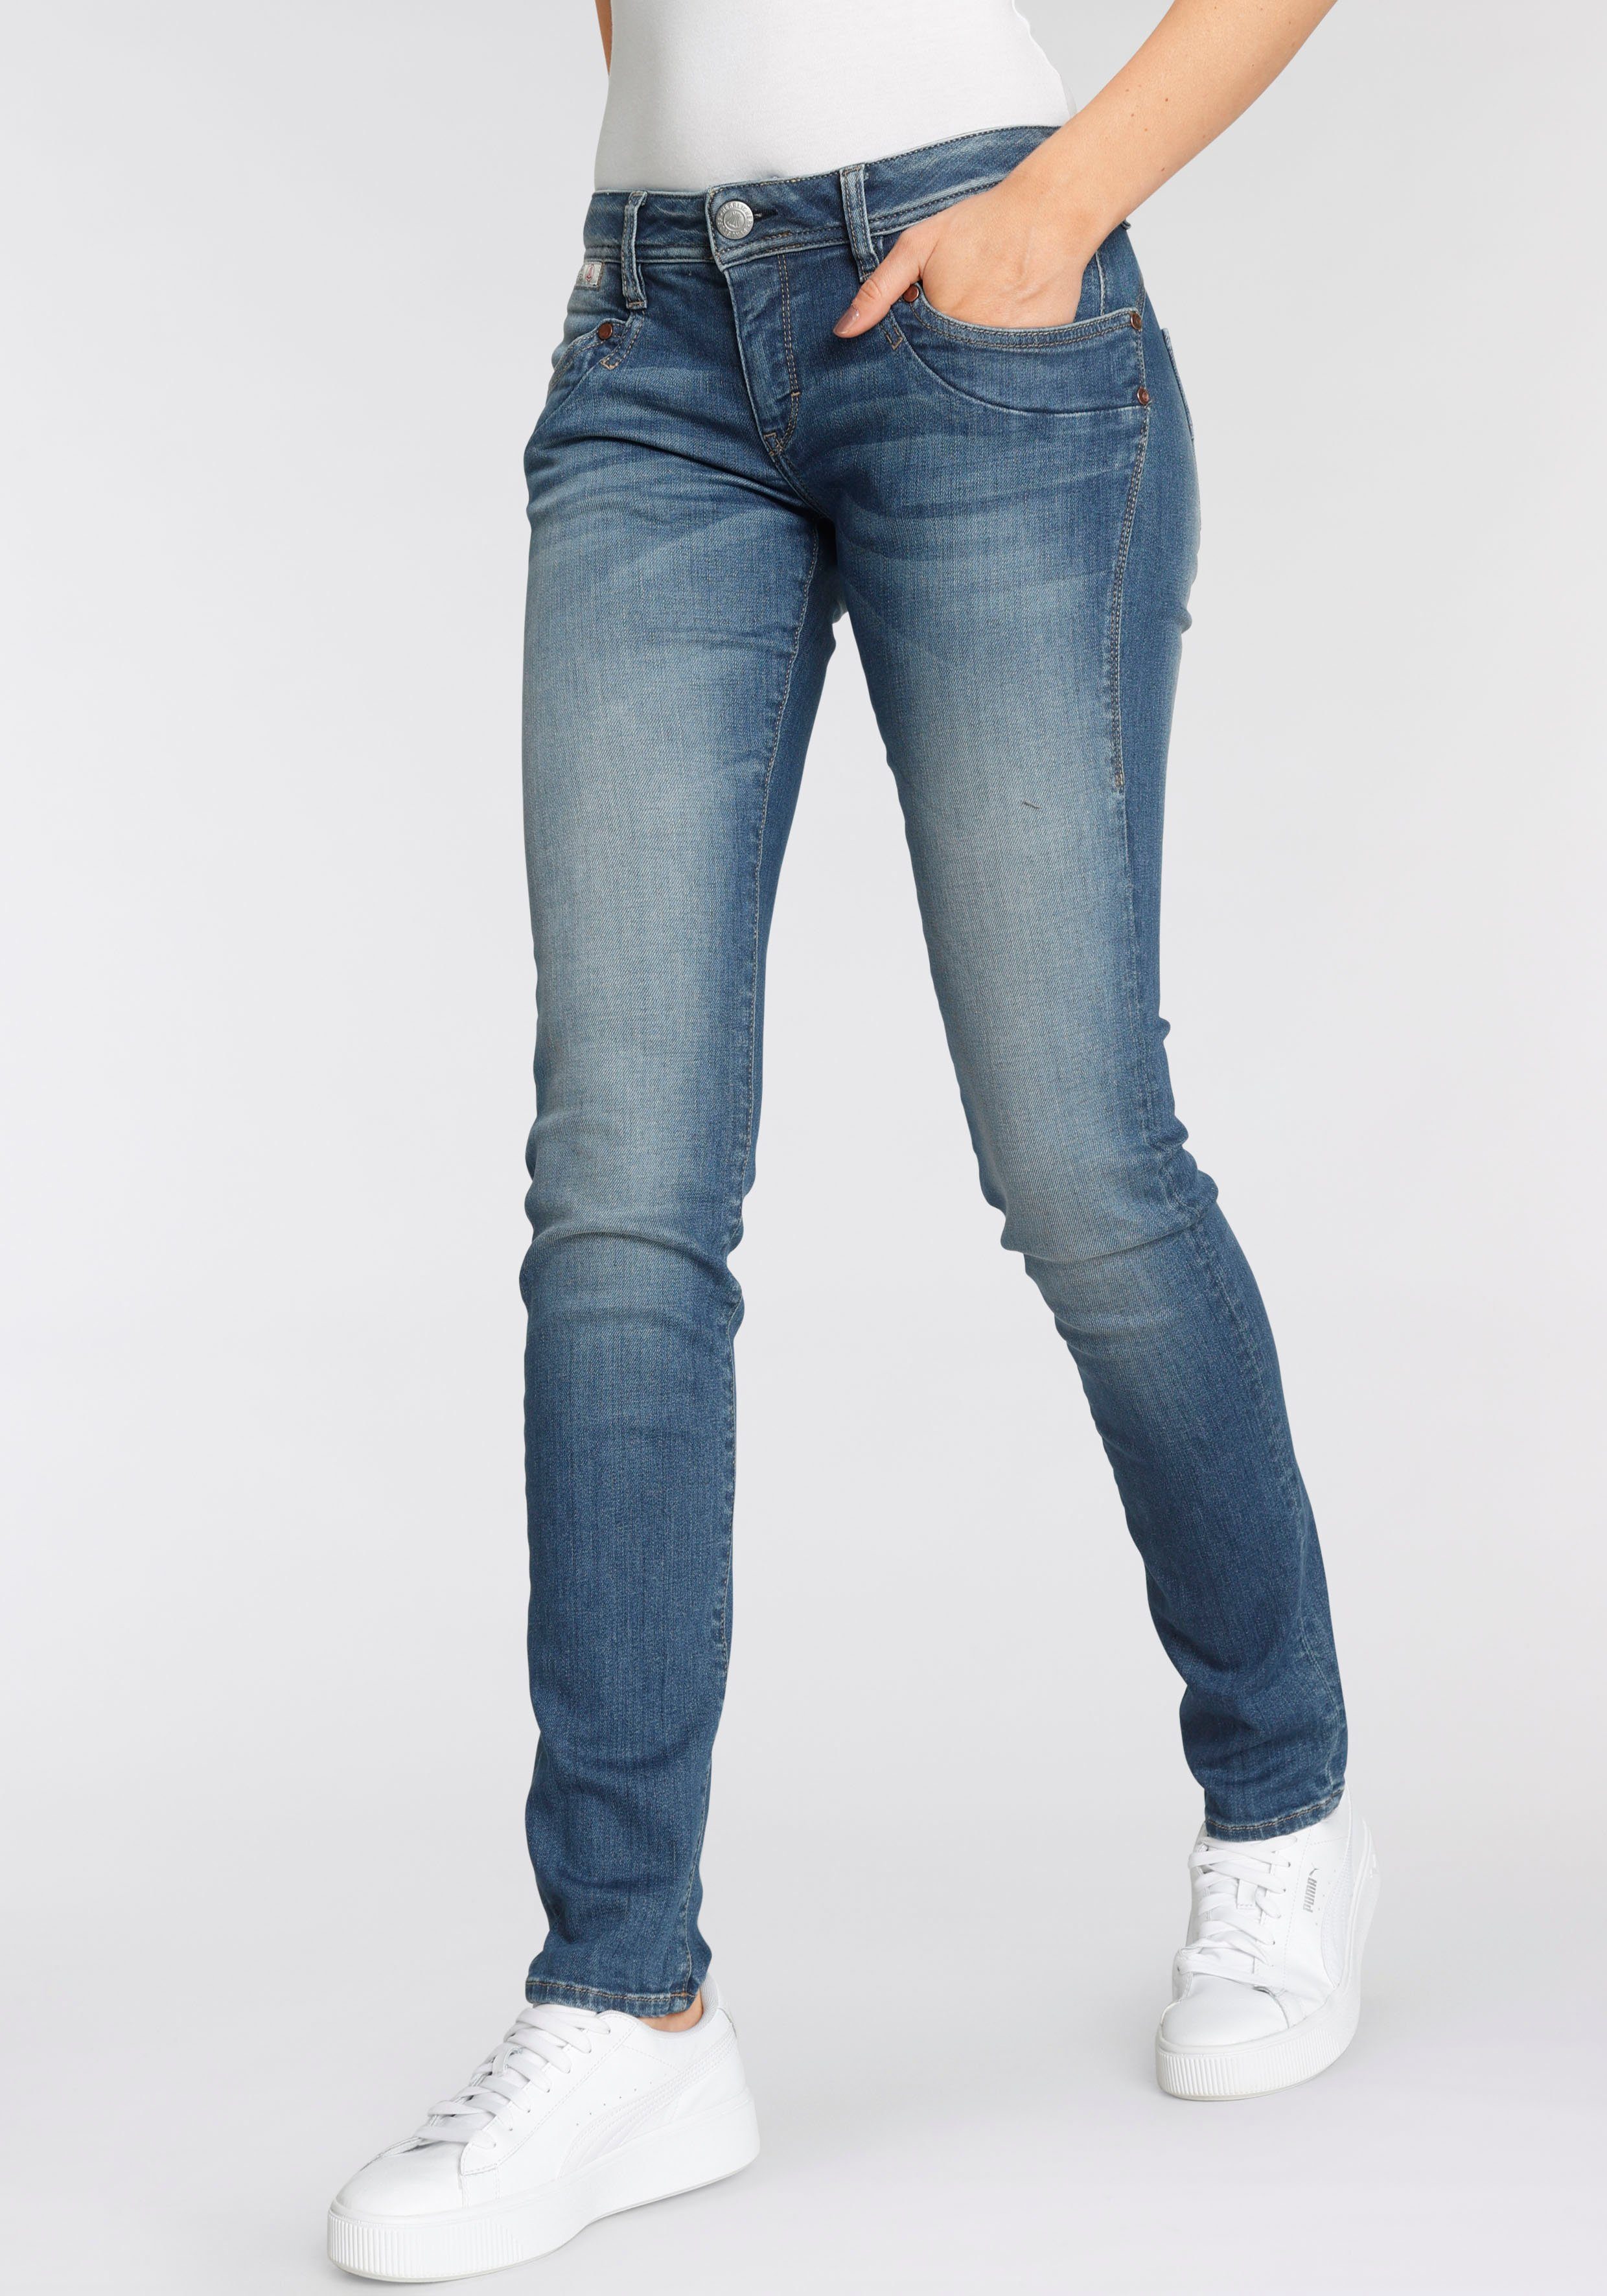 Kitotex umweltfreundlich Slim-fit-Jeans Technology ORGANIC PIPER dank SLIM Herrlicher